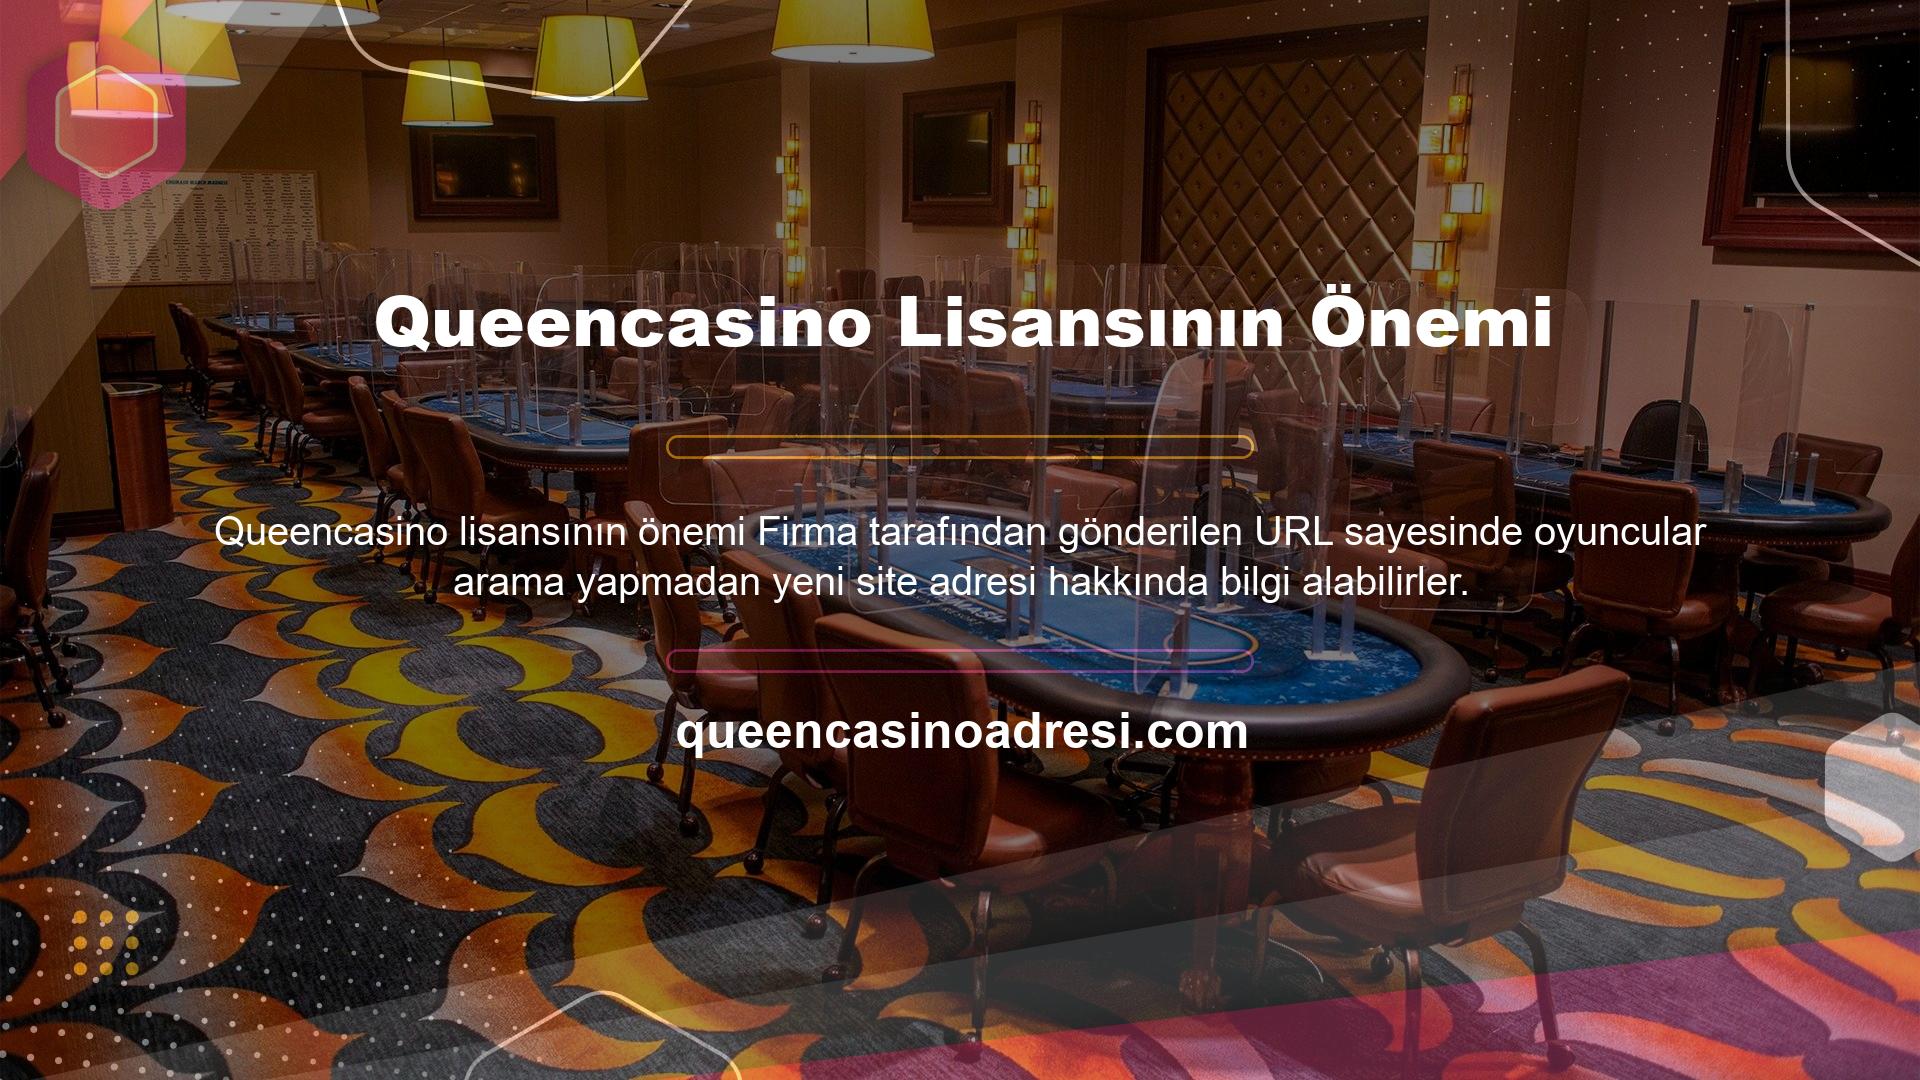 Queencasino lisansının önemi, web sitesinin tuttuğu lisans dosyası şüphesiz önemlidir